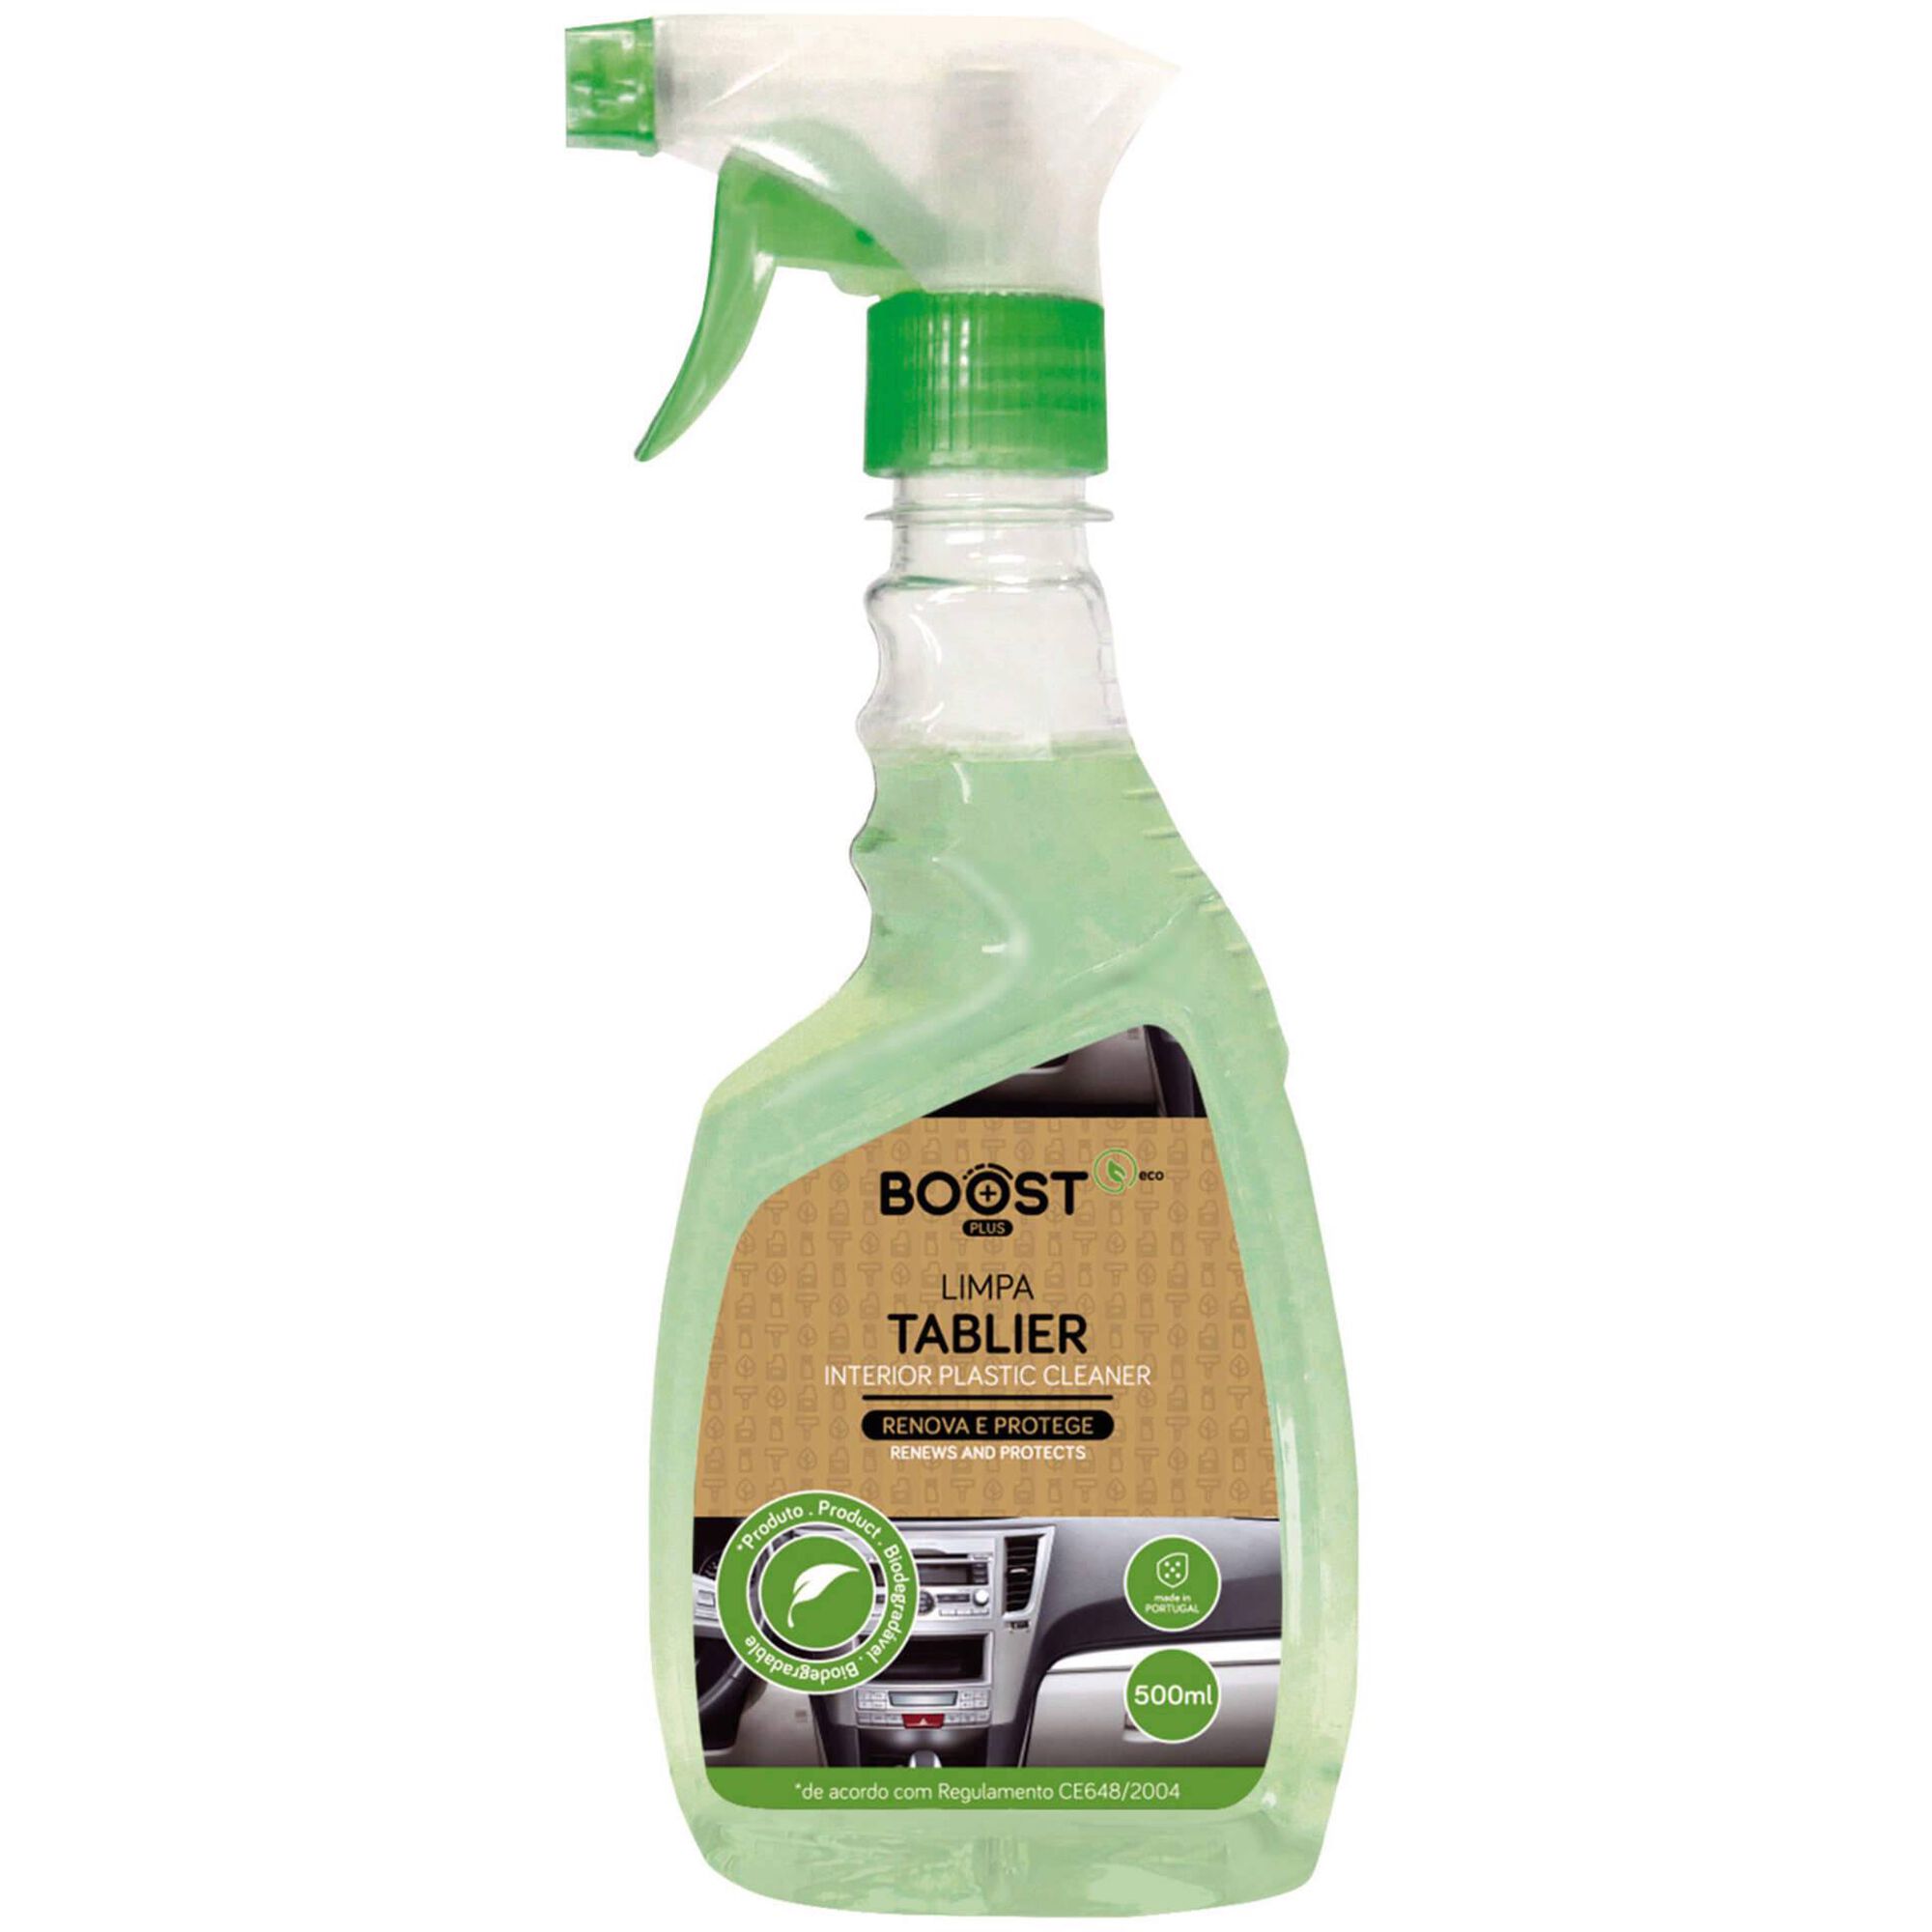 Spray Limpa Tablier Eco